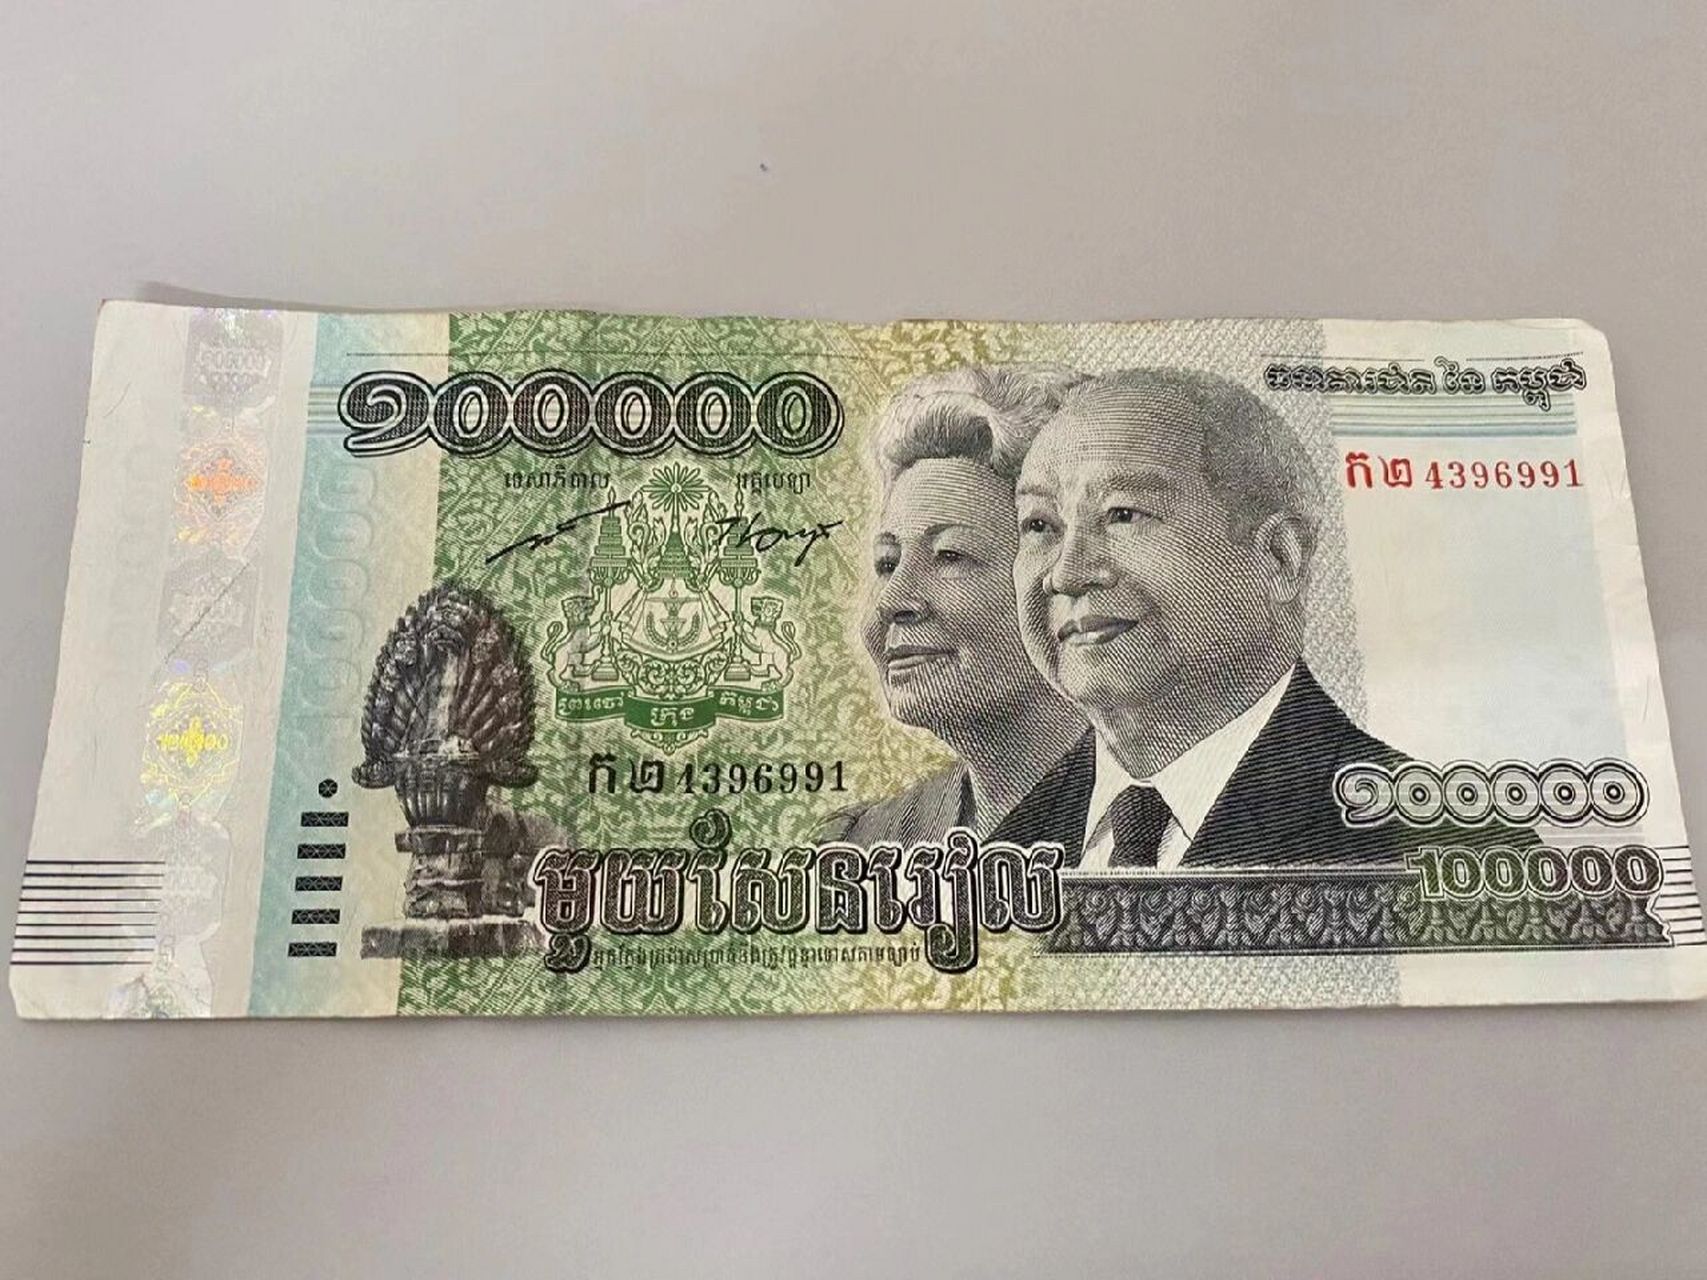 平常用的目前柬埔寨最大面值是钱币瑞尔10w 【100000折合人民币约158